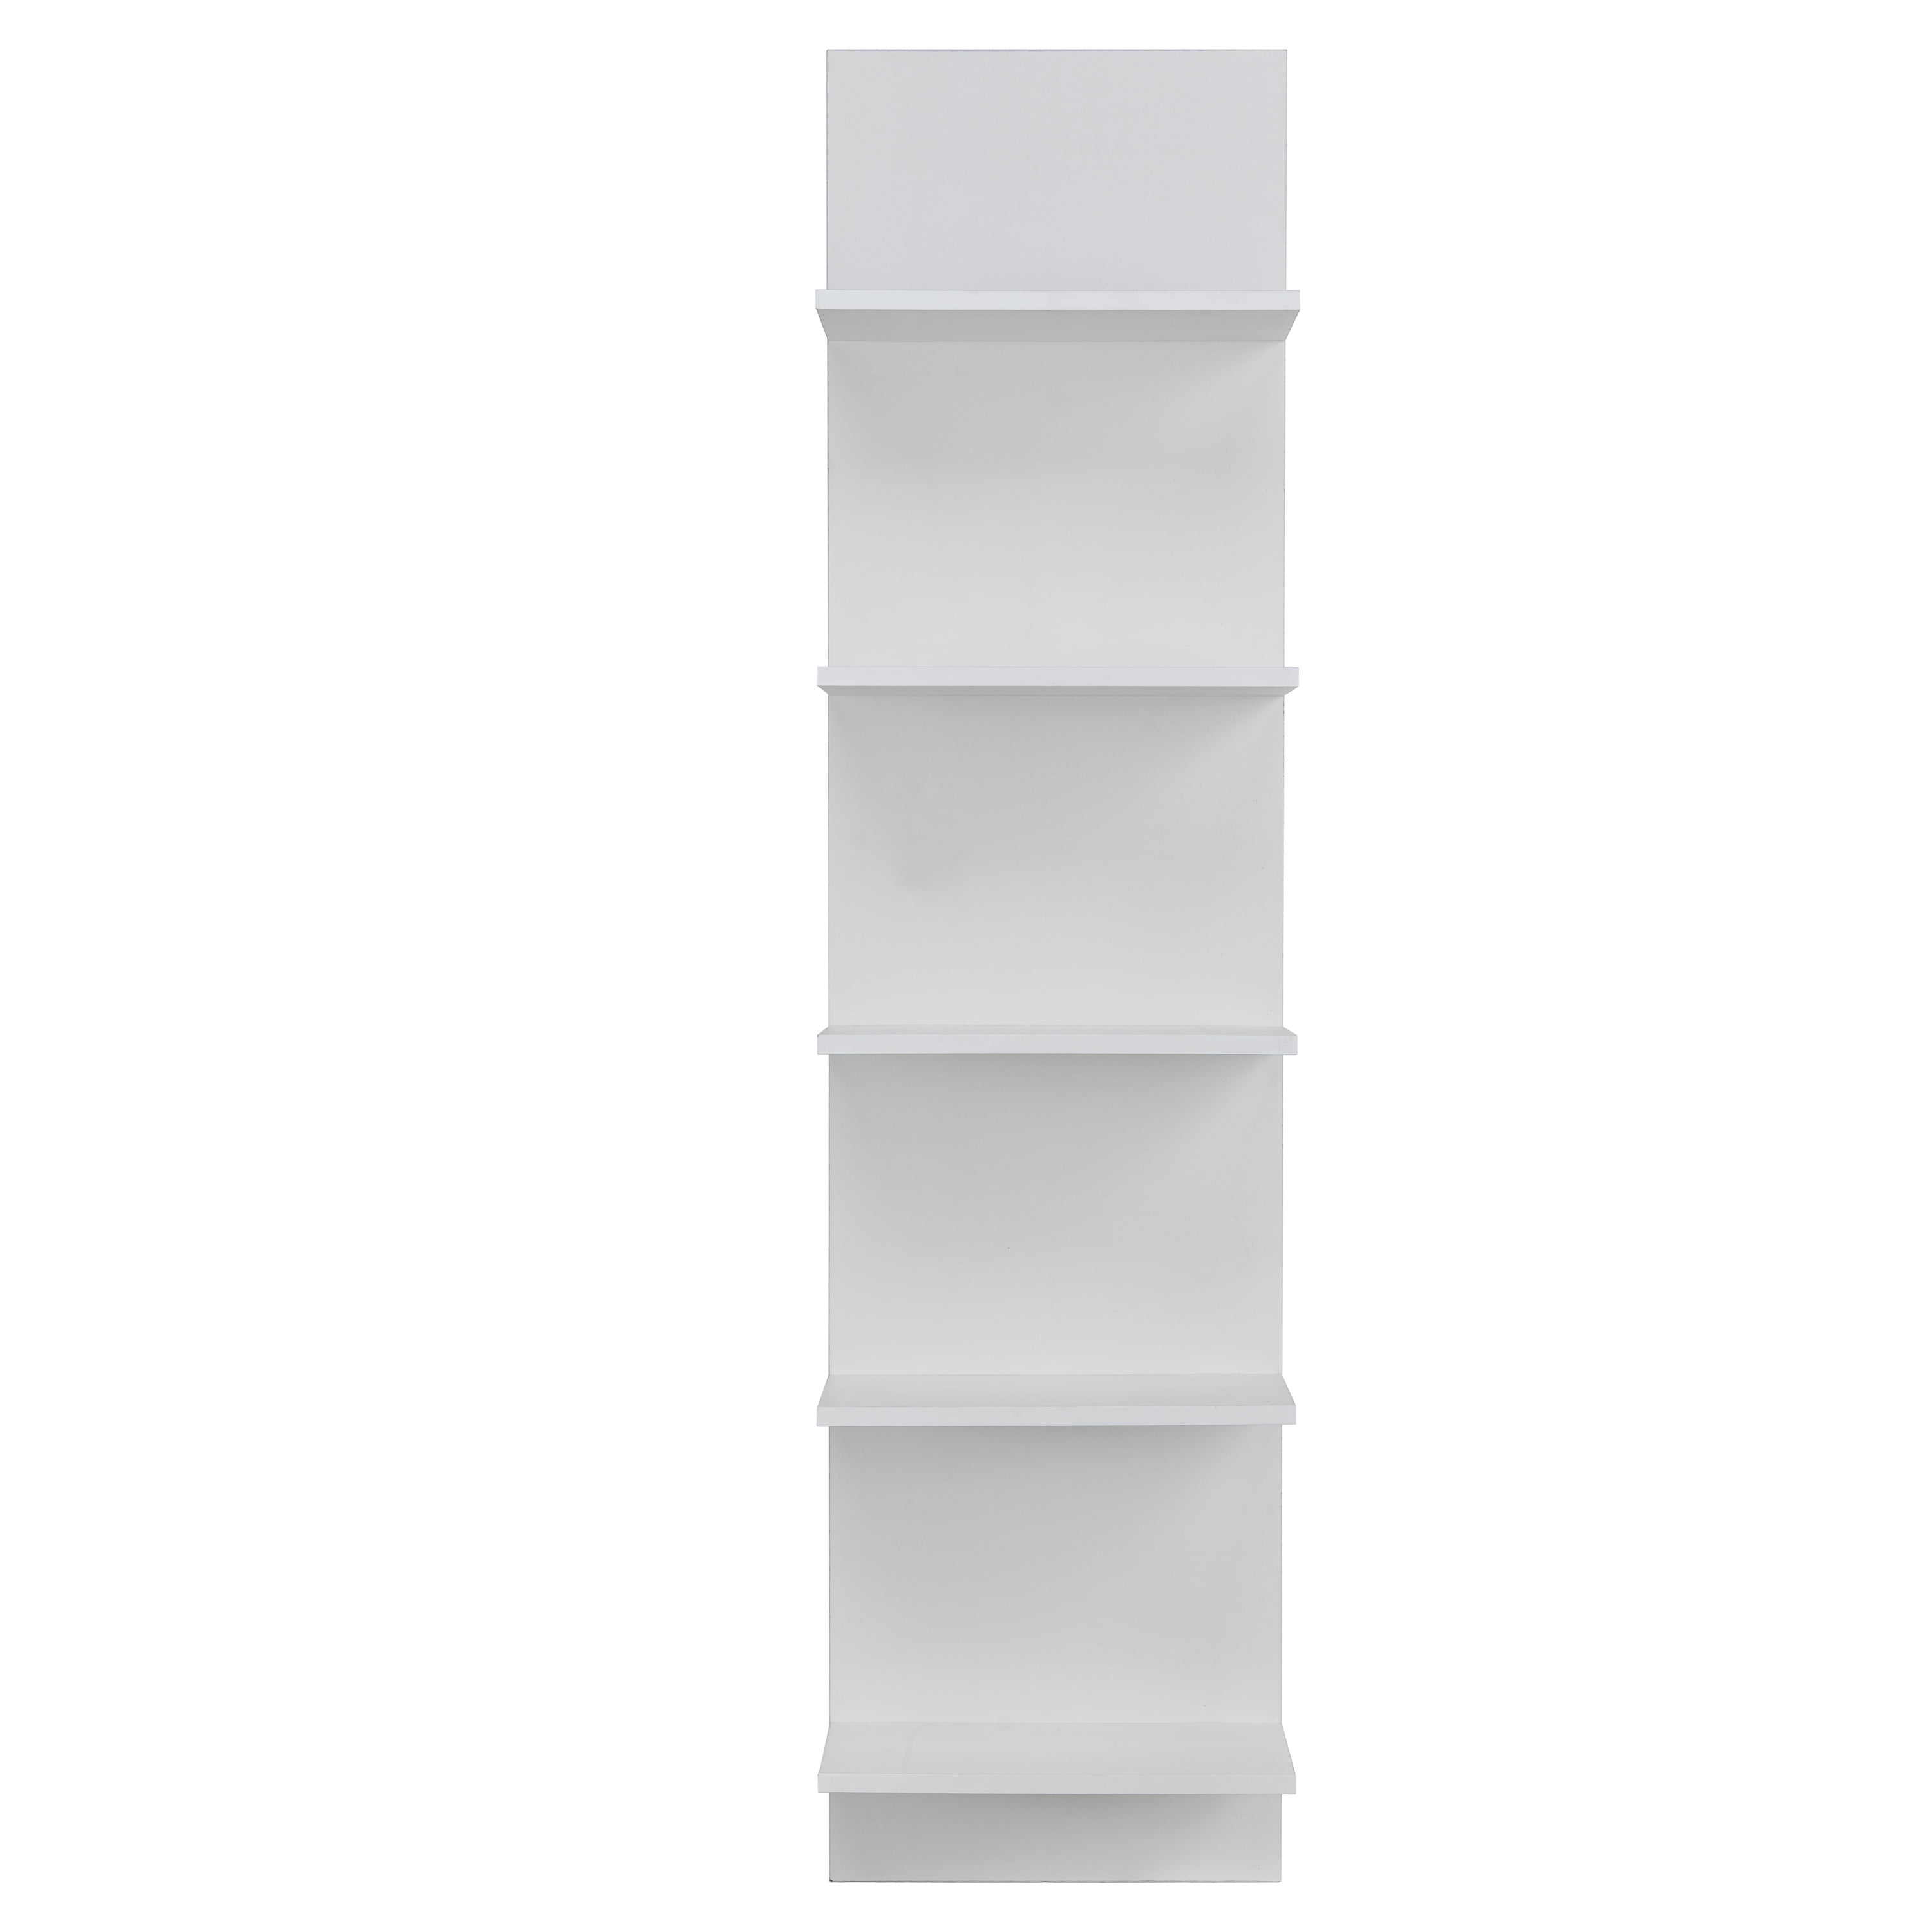 2 Tier Vertical Floating Wall Shelf, White Floating Vertical Bookshelves